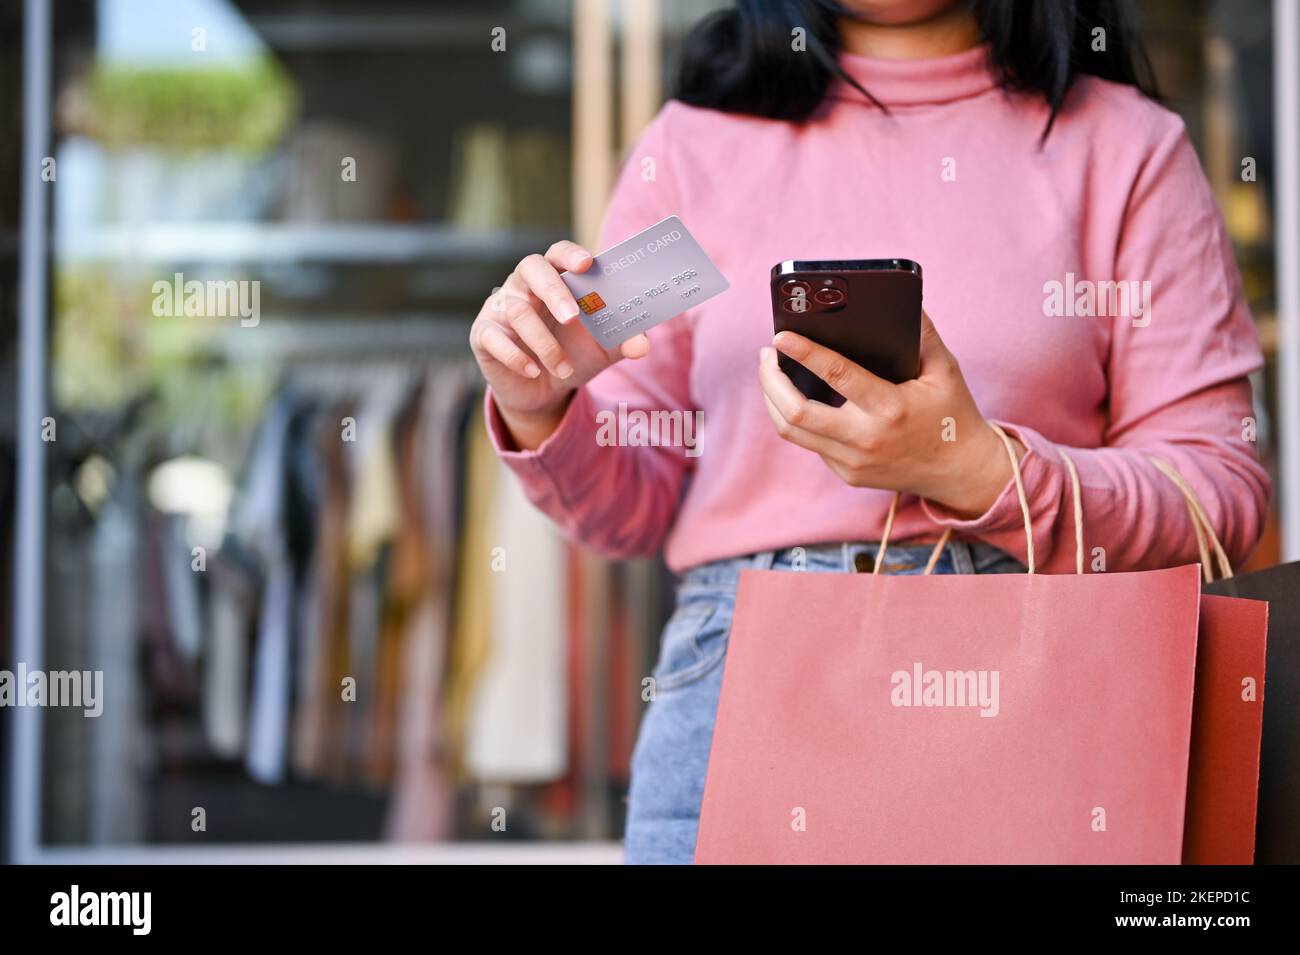 Die junge Asiatin mit ihren Einkaufstaschen, die eine Kreditkarte und ihr Smartphone in der Hand halten, steht vor einem Kleiderladen. Stockfoto